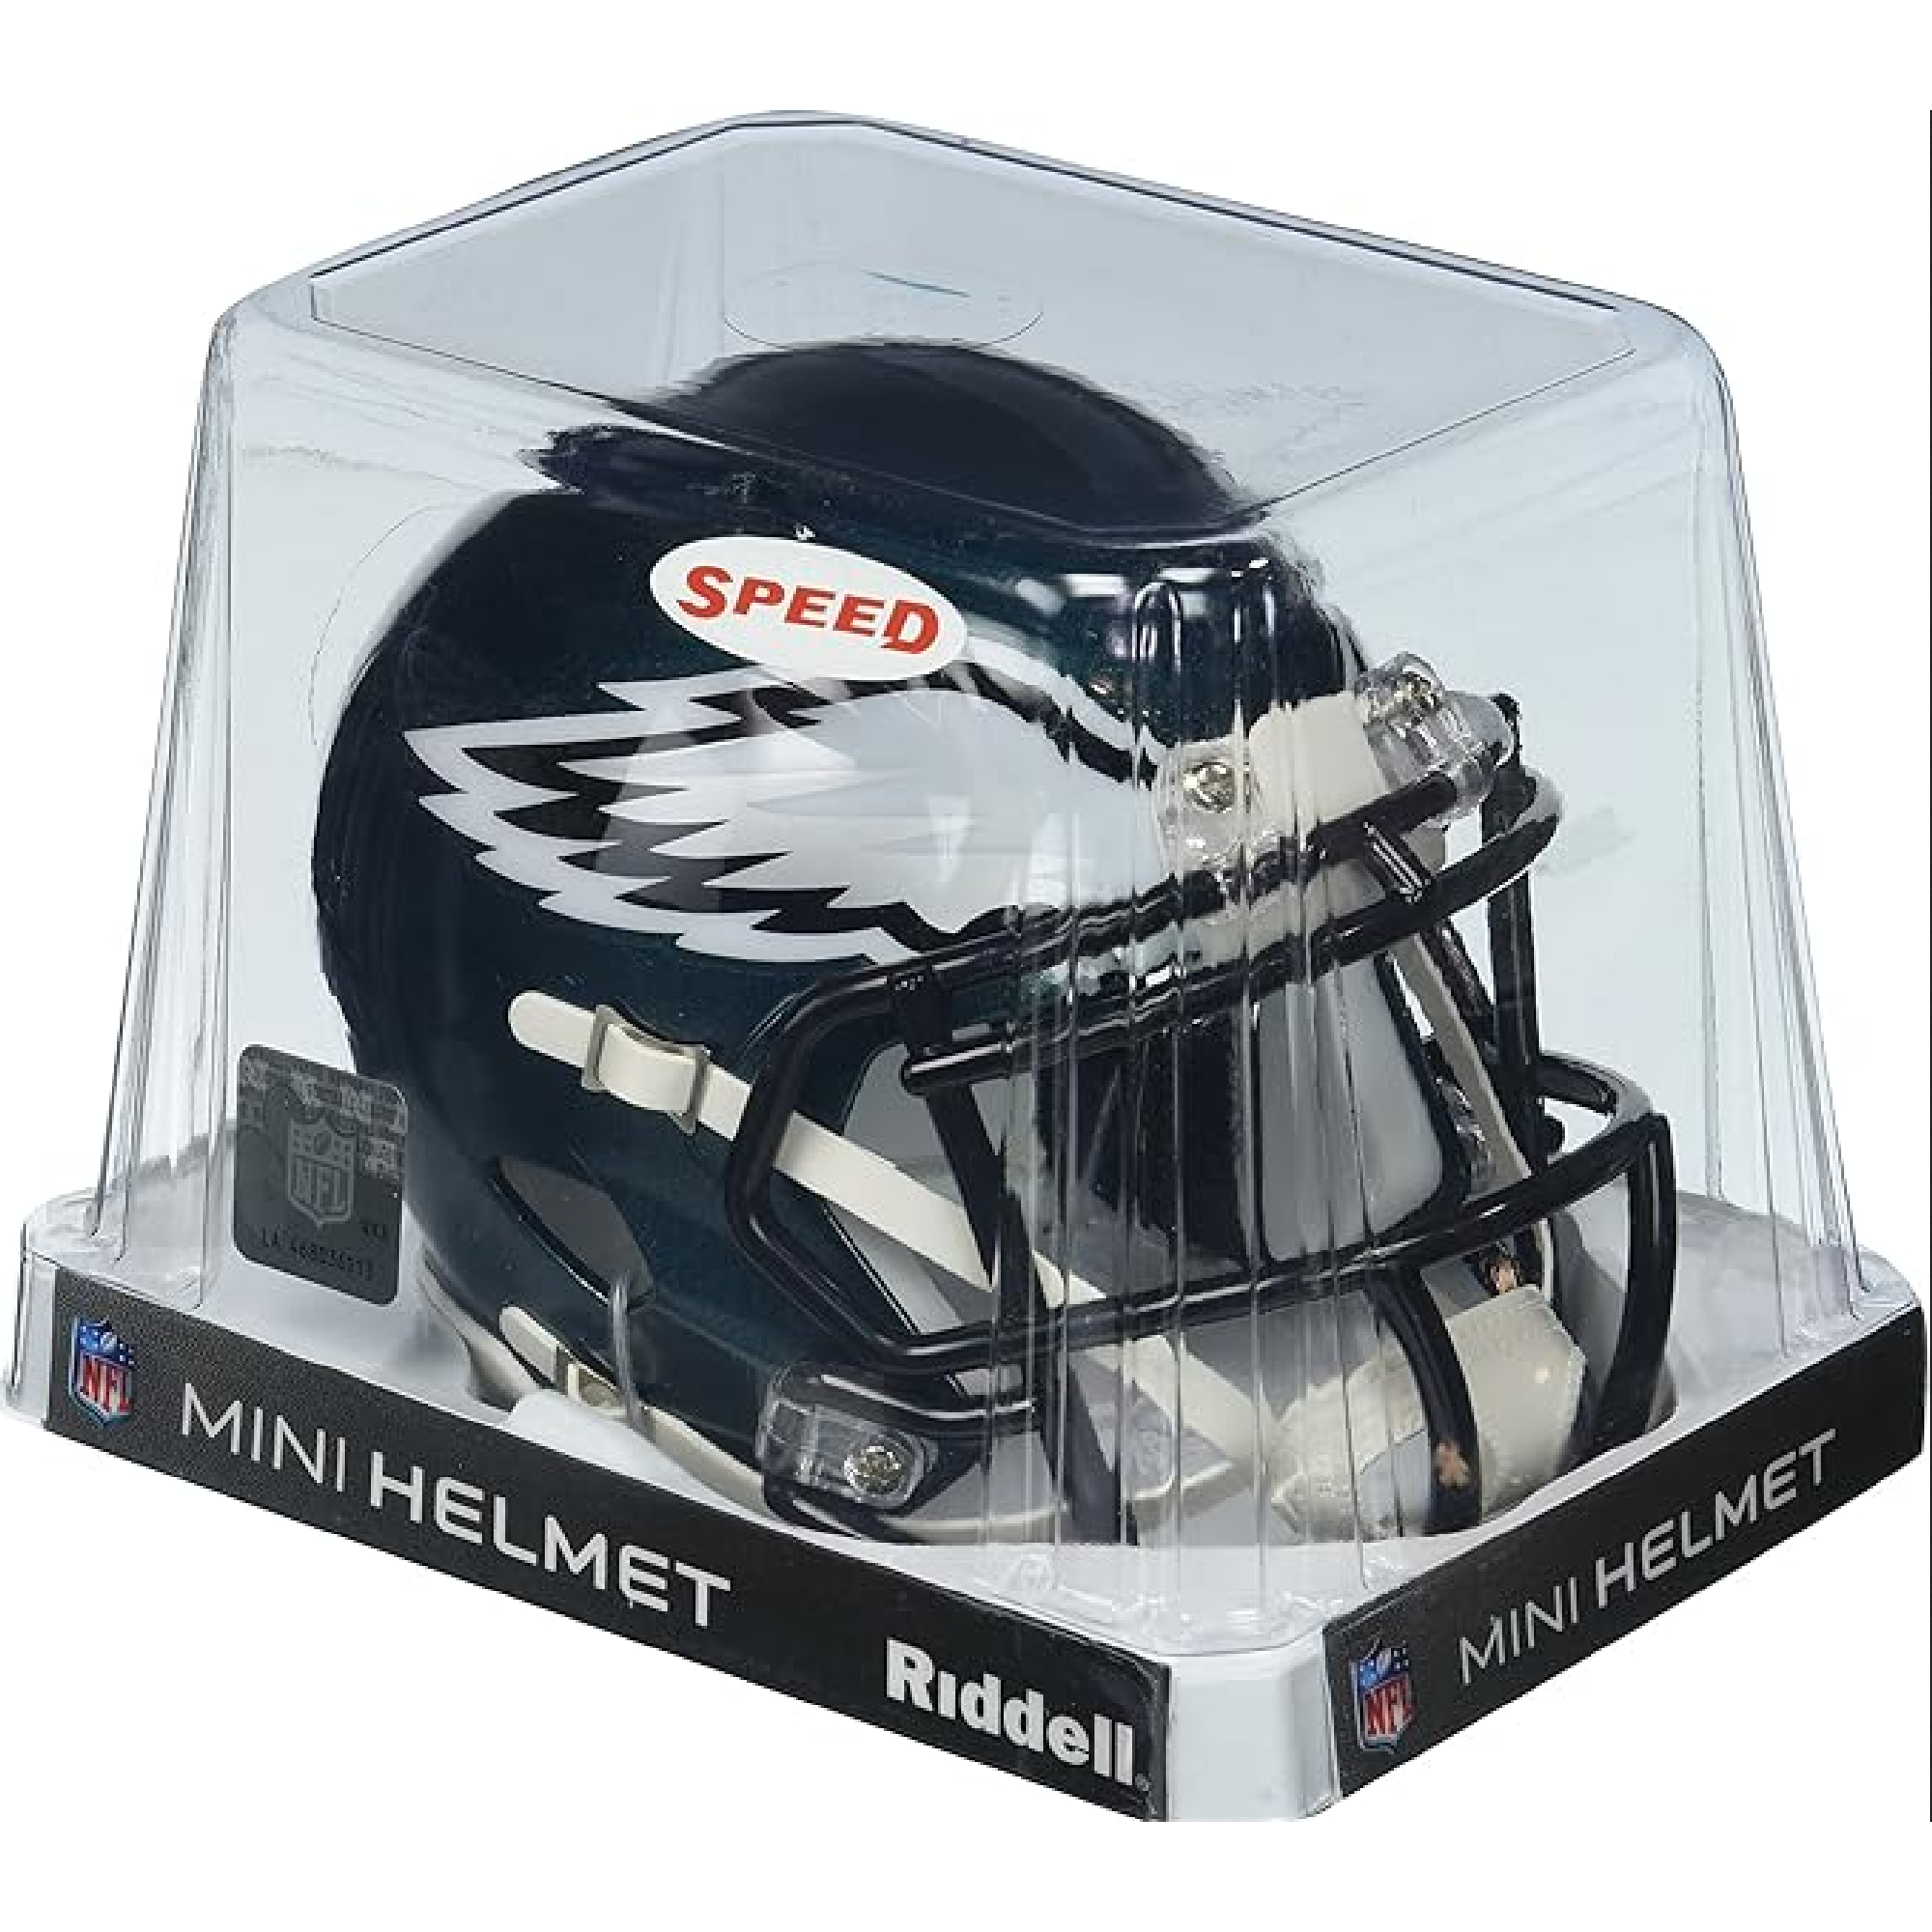 Philadelphia Eagles MINI Helmet, Phila delphia helmet